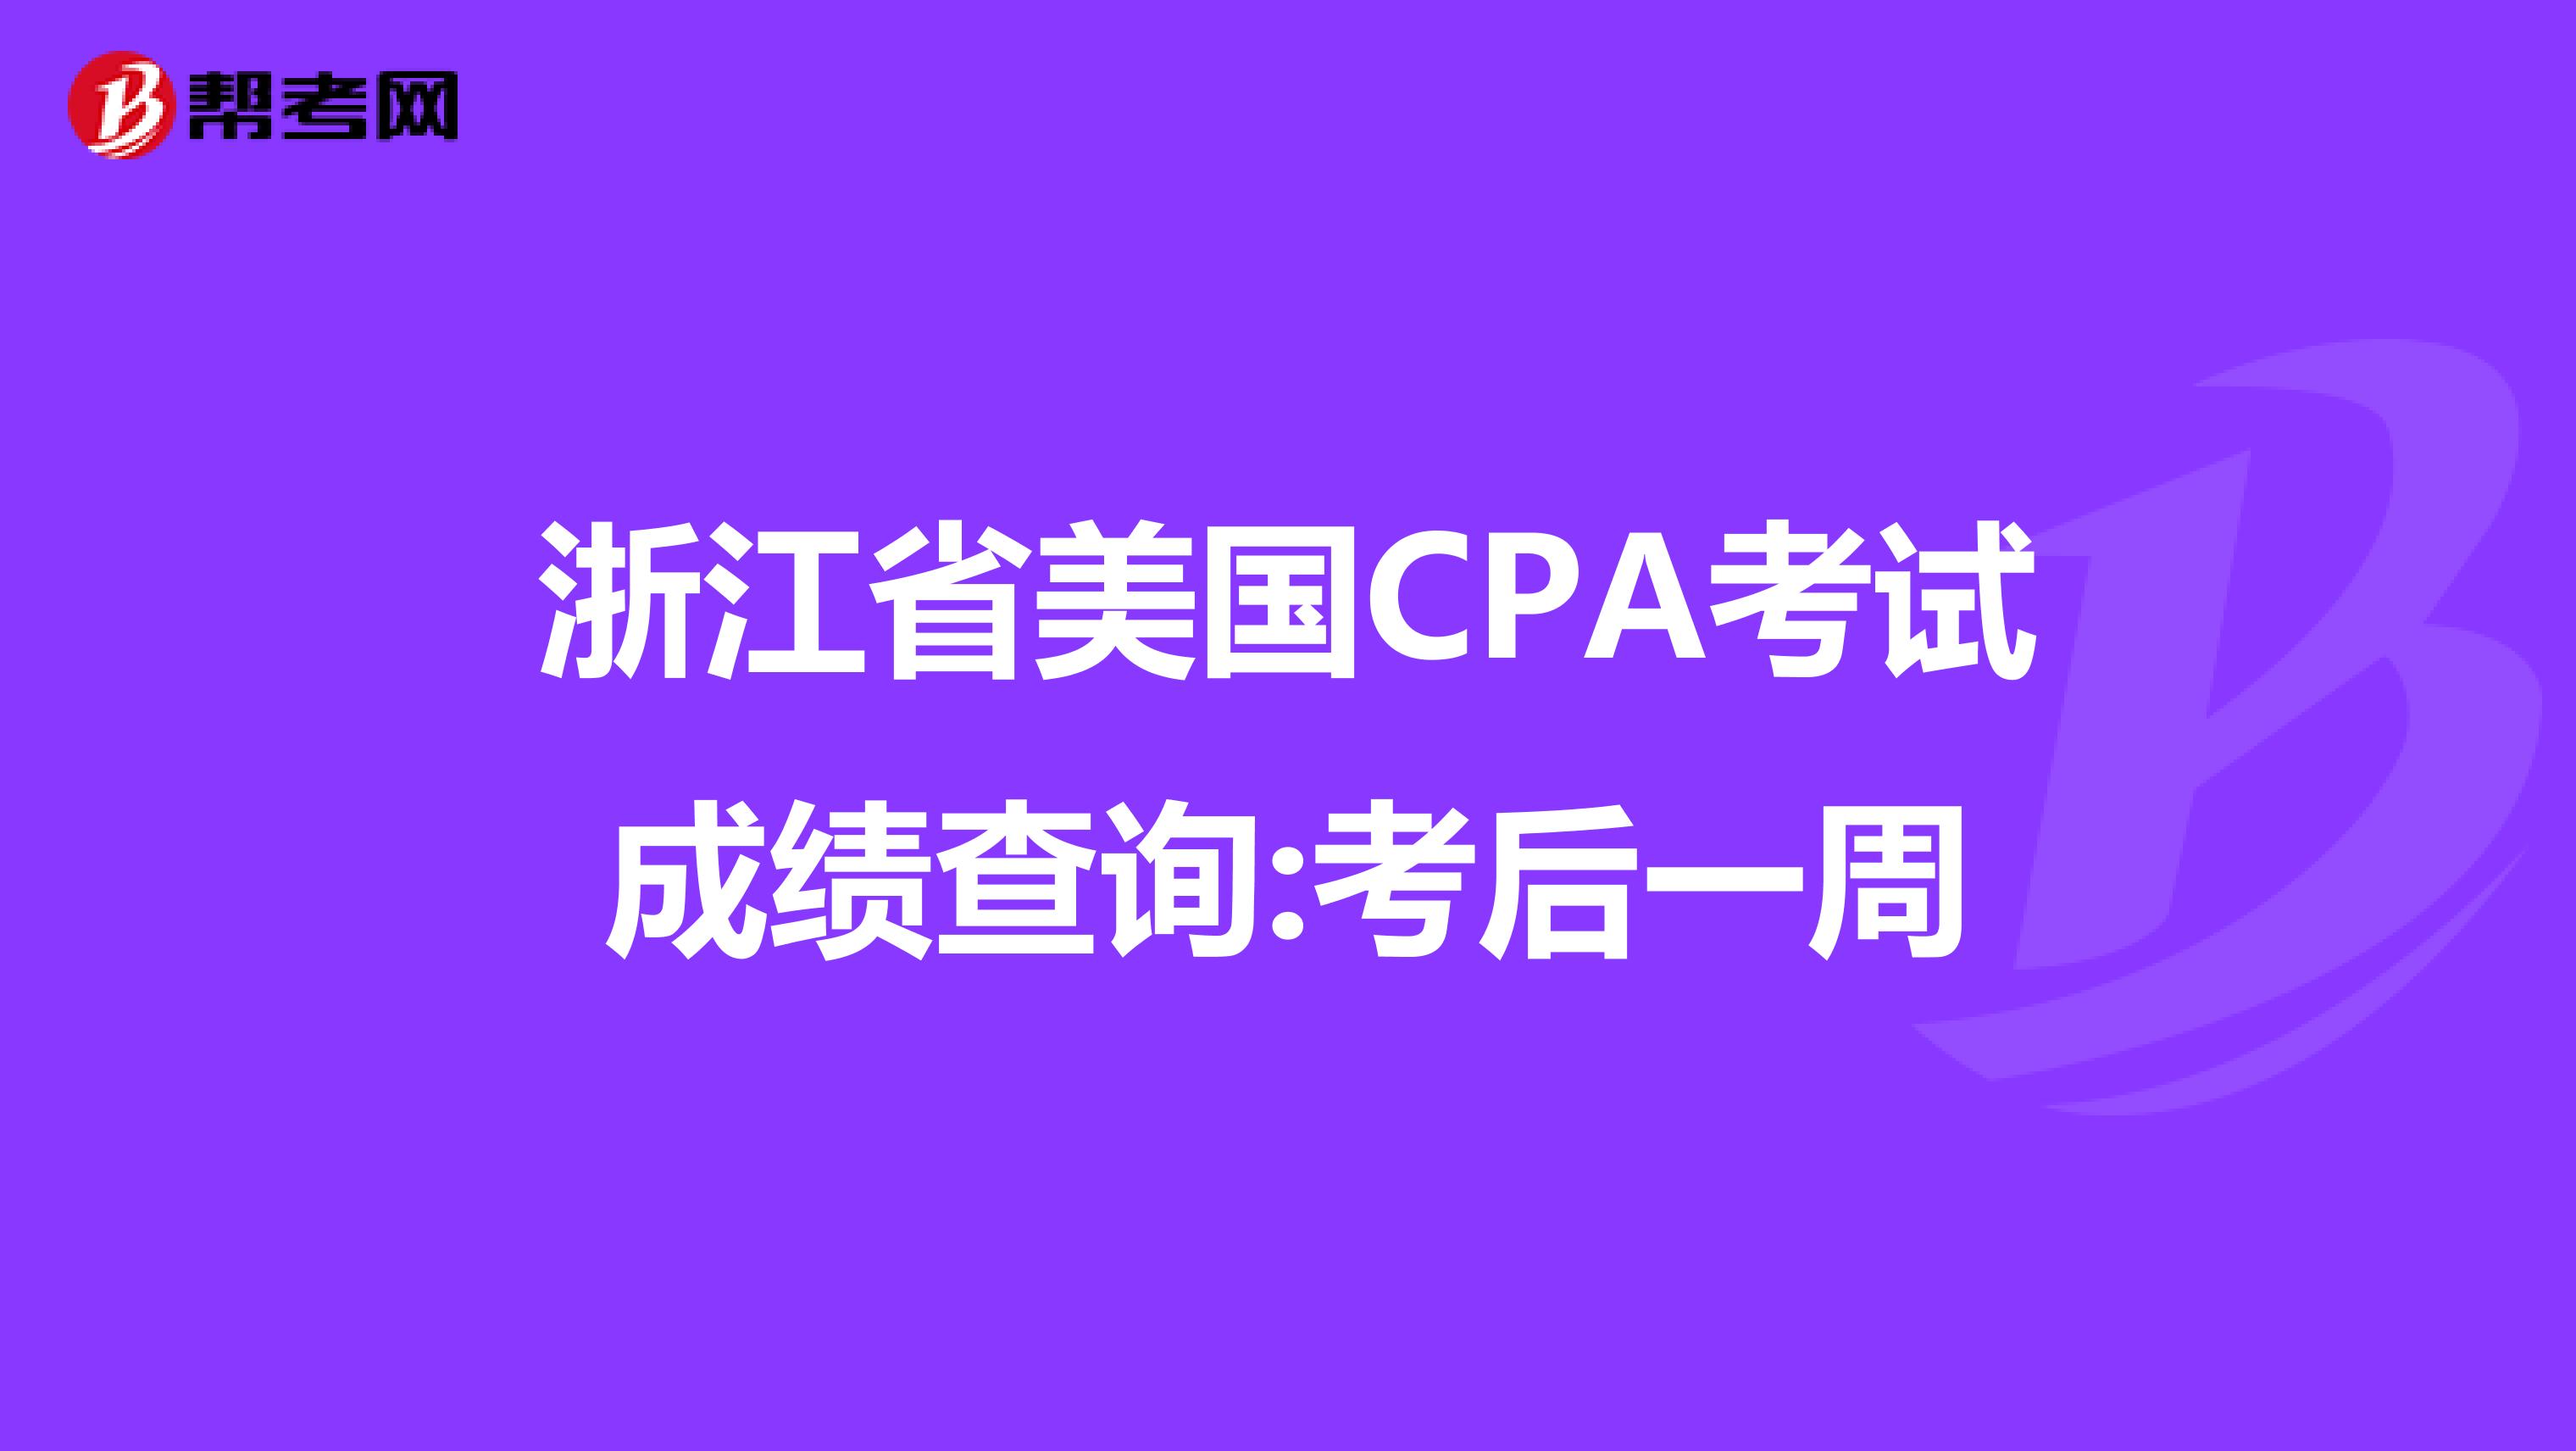 浙江省美国CPA考试成绩查询:考后一周